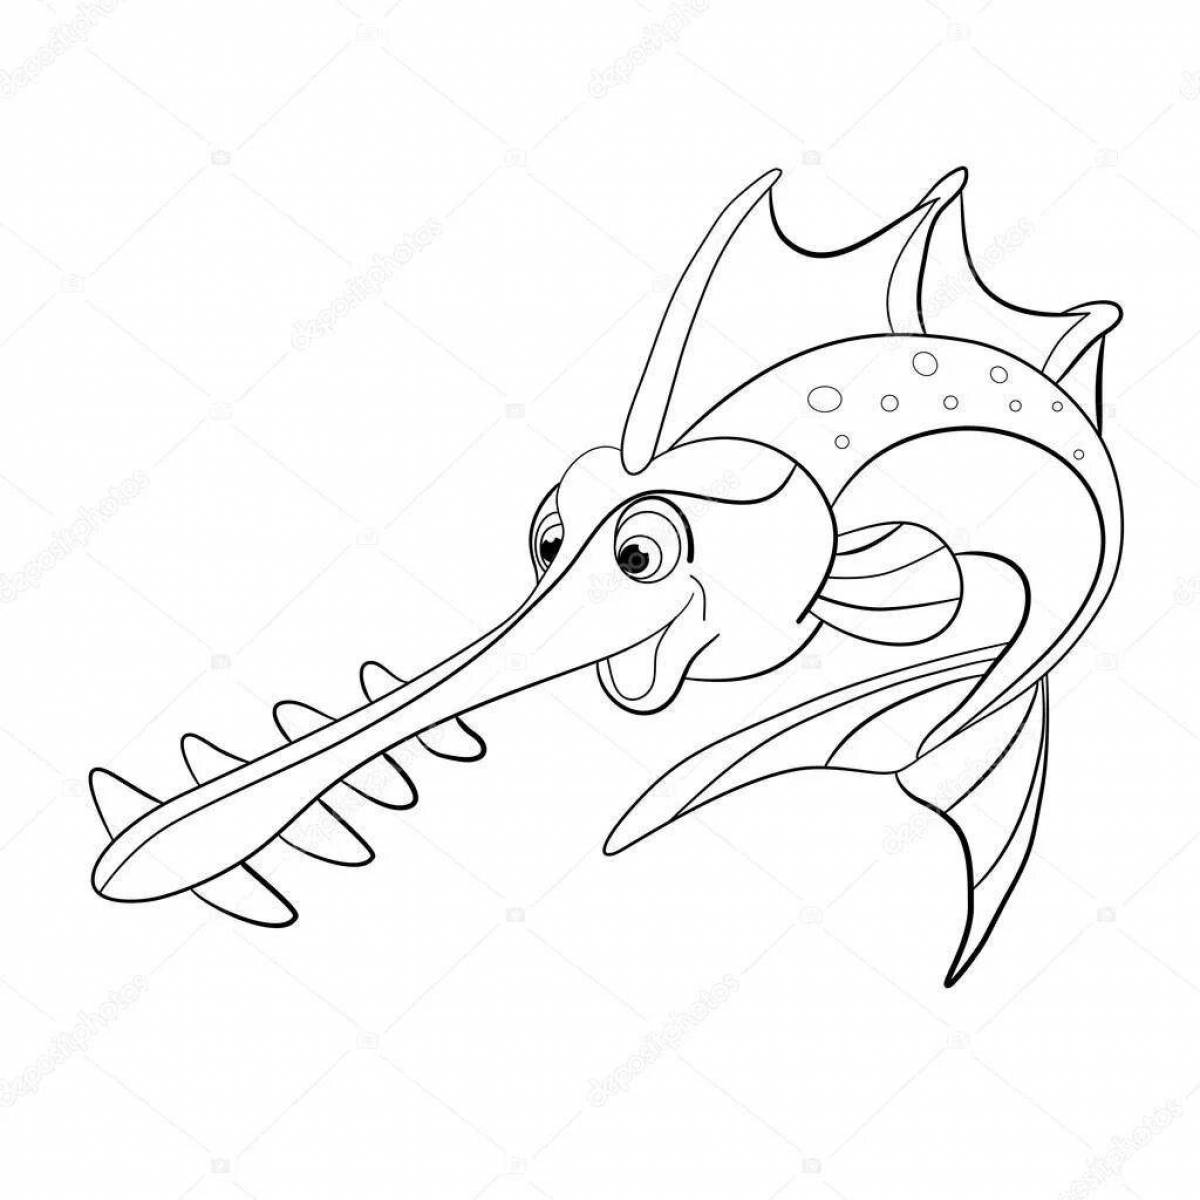 Unique sawfish coloring page